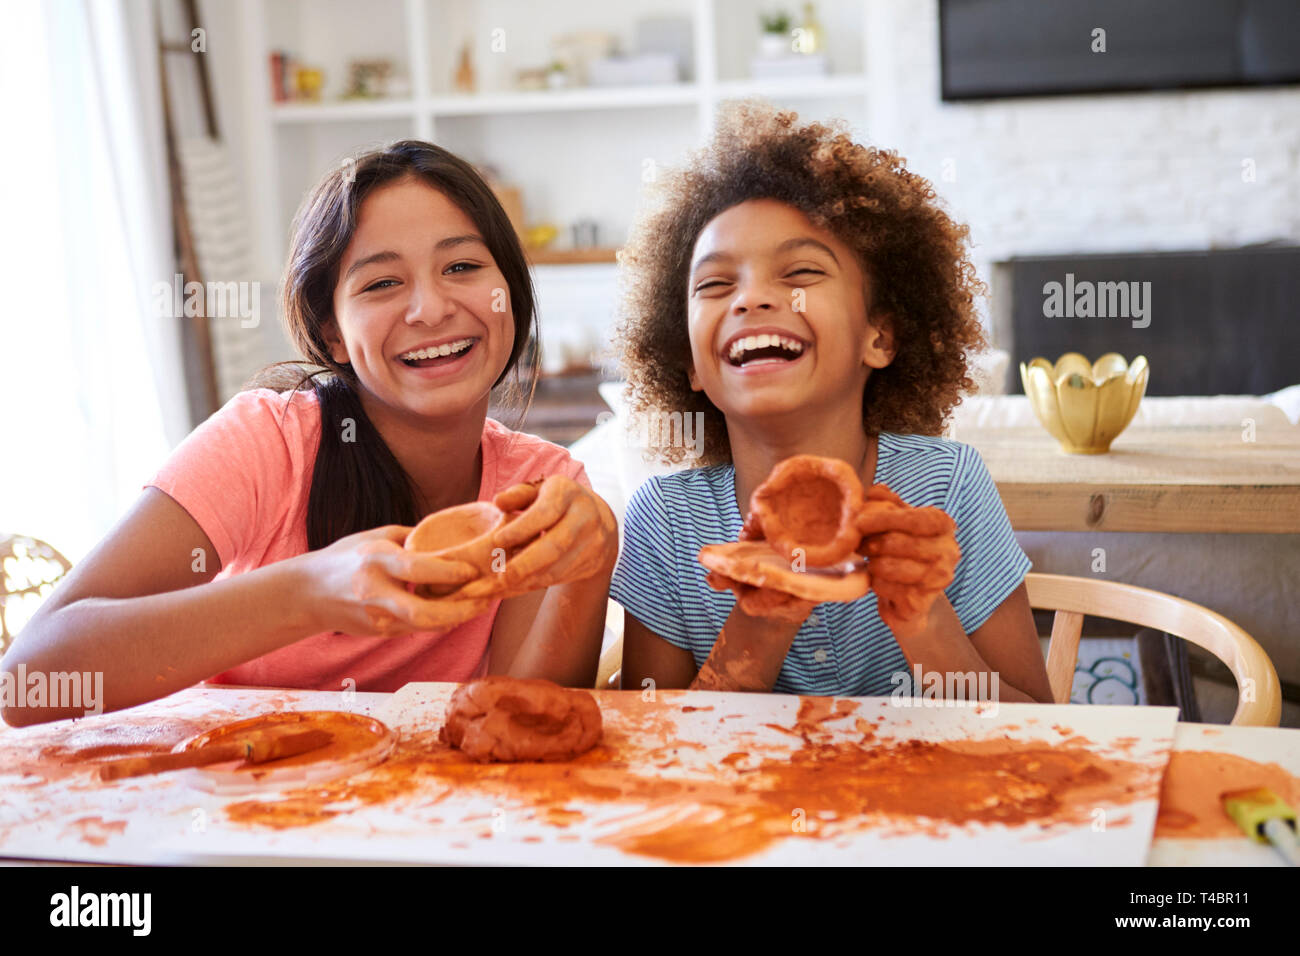 Deux copines s'amusant à jouer avec de la pâte à modeler à la maison, riant et montrant leurs créations à l'appareil photo, vue de face, Close up Banque D'Images